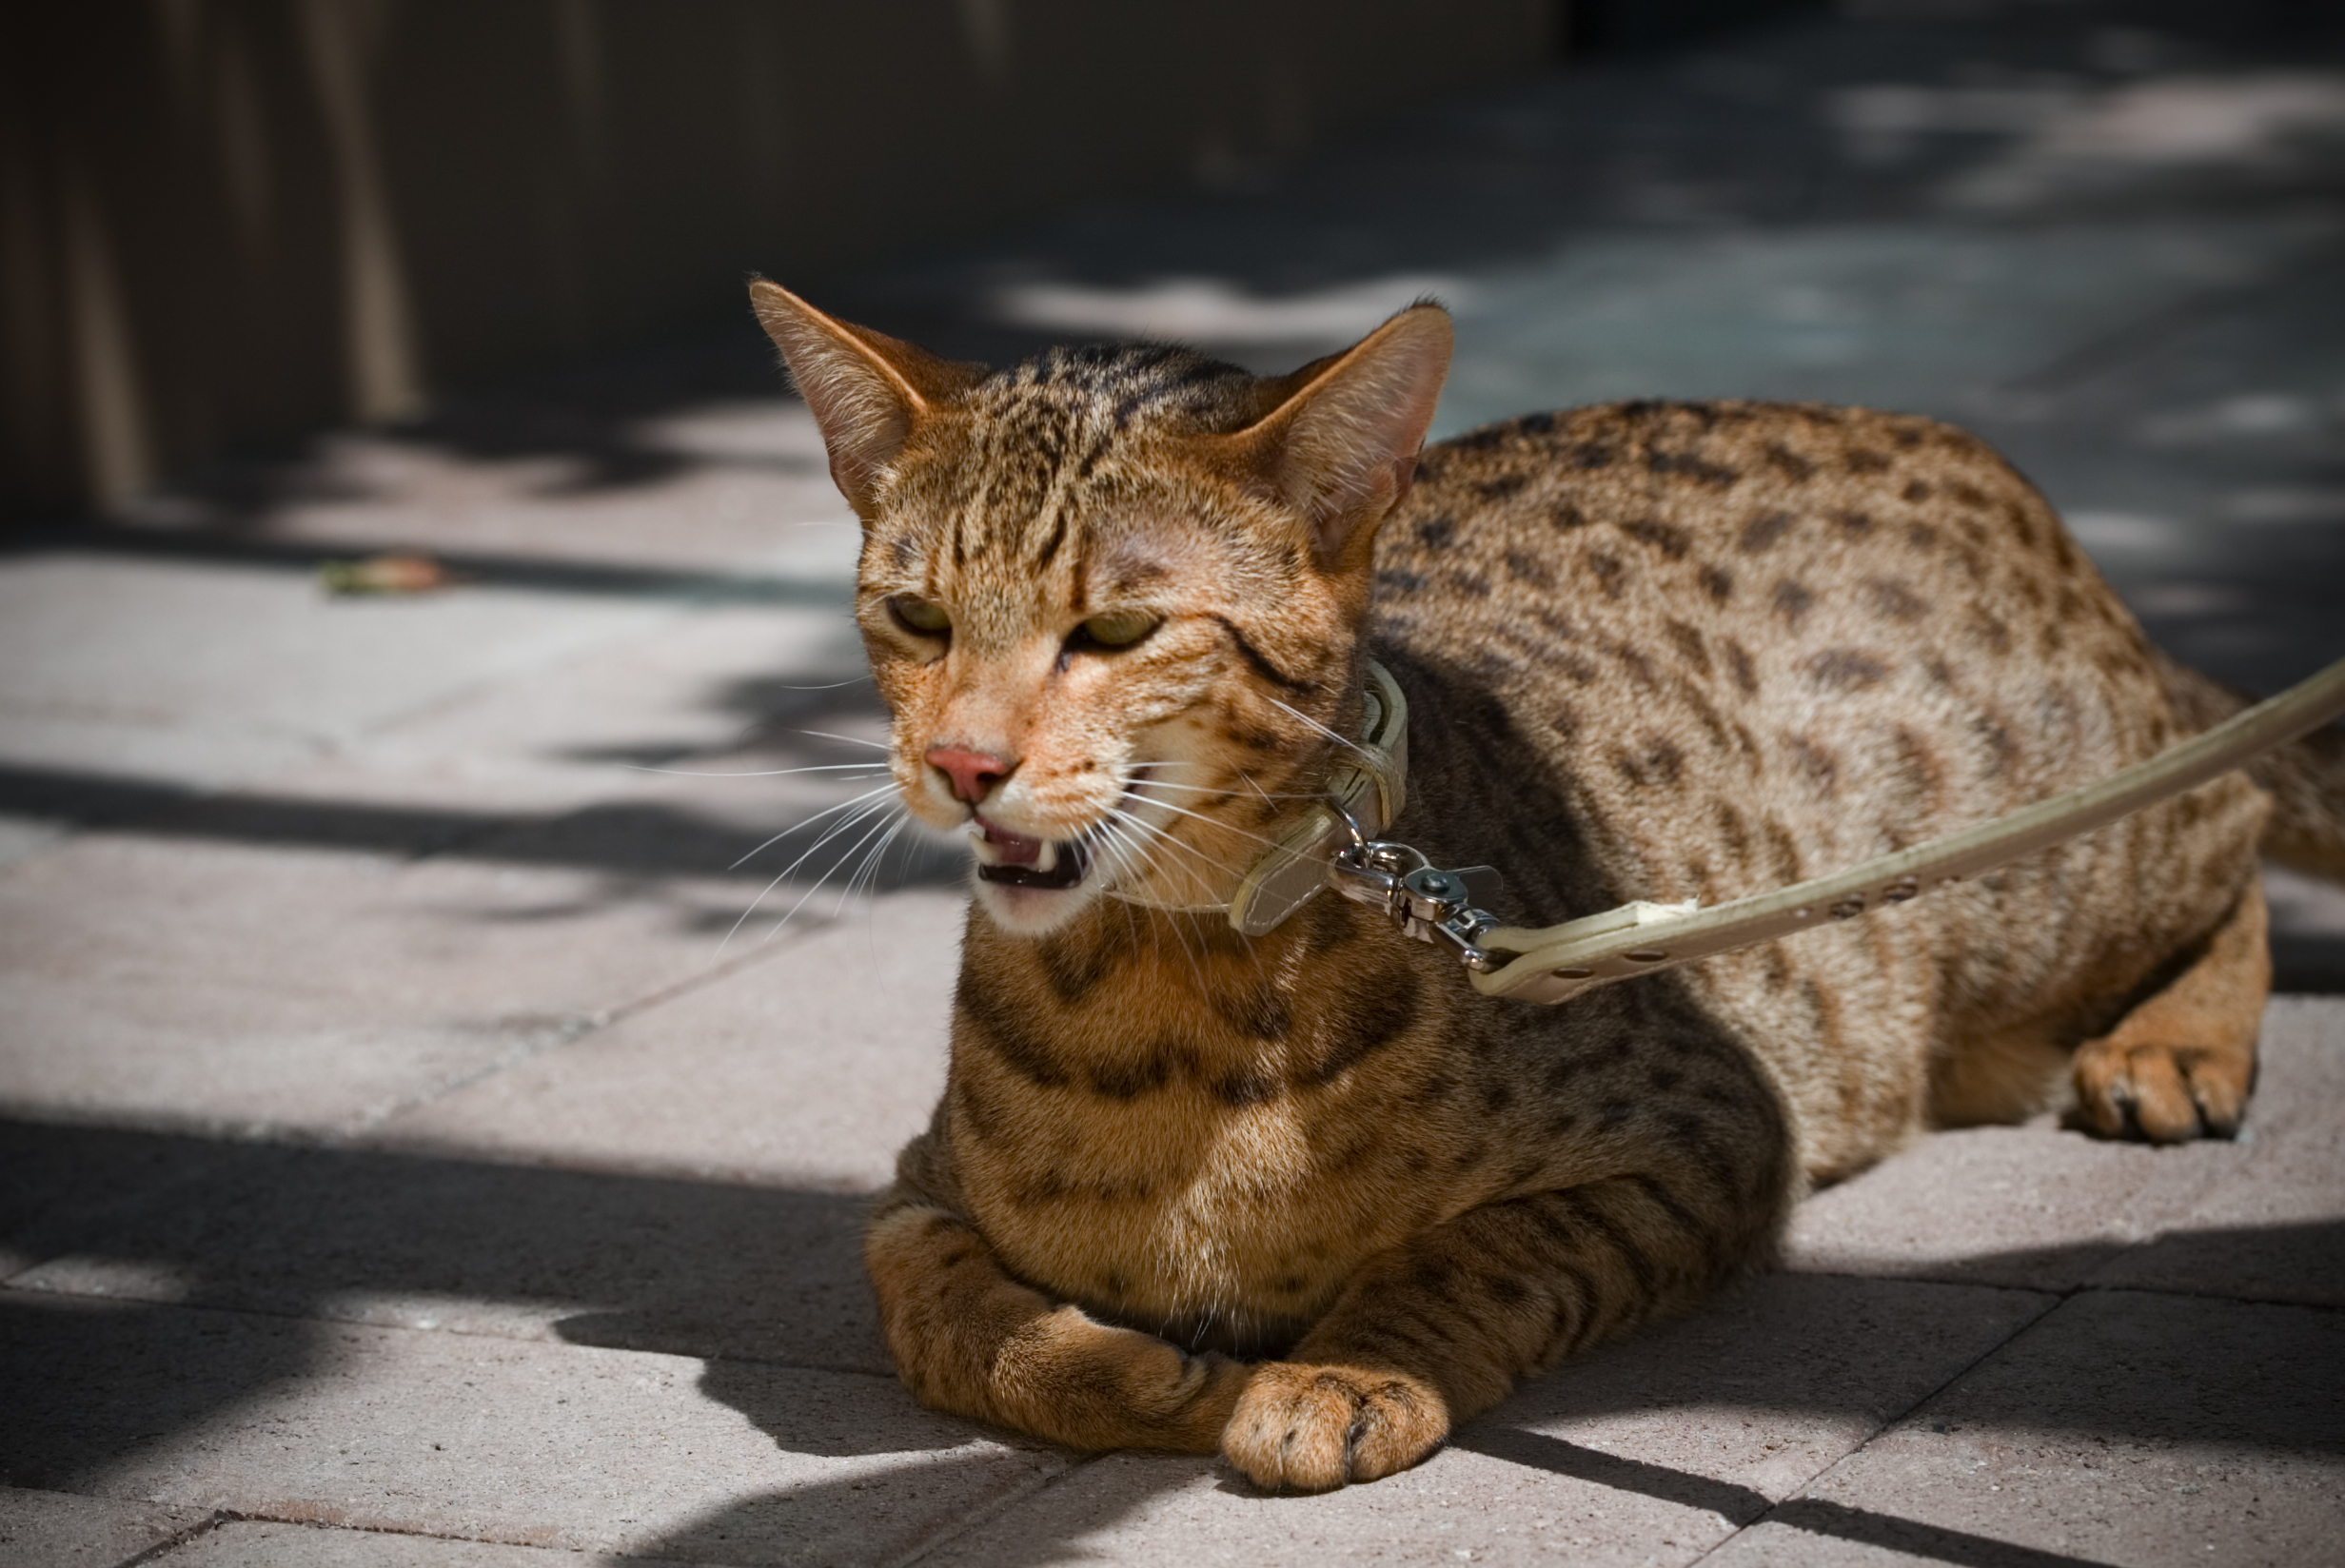 Самая большая домашняя кошка порода. Мейн кун Ашера. Ашера (кошка). Порода Саванна (Ашера). Порода кошек Ашера.